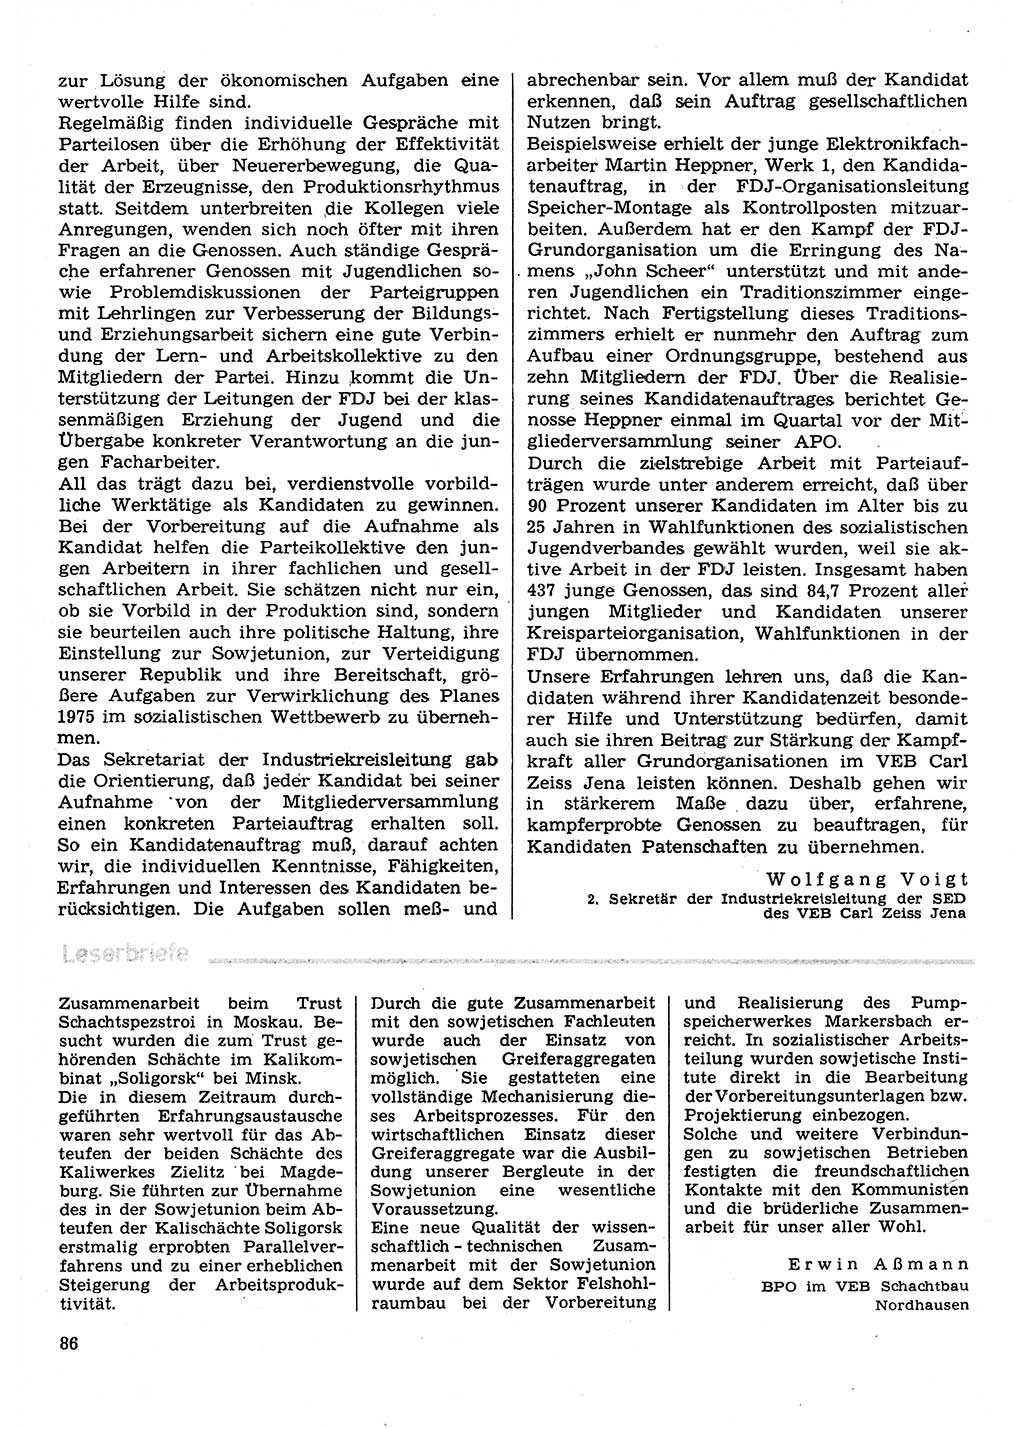 Neuer Weg (NW), Organ des Zentralkomitees (ZK) der SED (Sozialistische Einheitspartei Deutschlands) für Fragen des Parteilebens, 30. Jahrgang [Deutsche Demokratische Republik (DDR)] 1975, Seite 86 (NW ZK SED DDR 1975, S. 86)